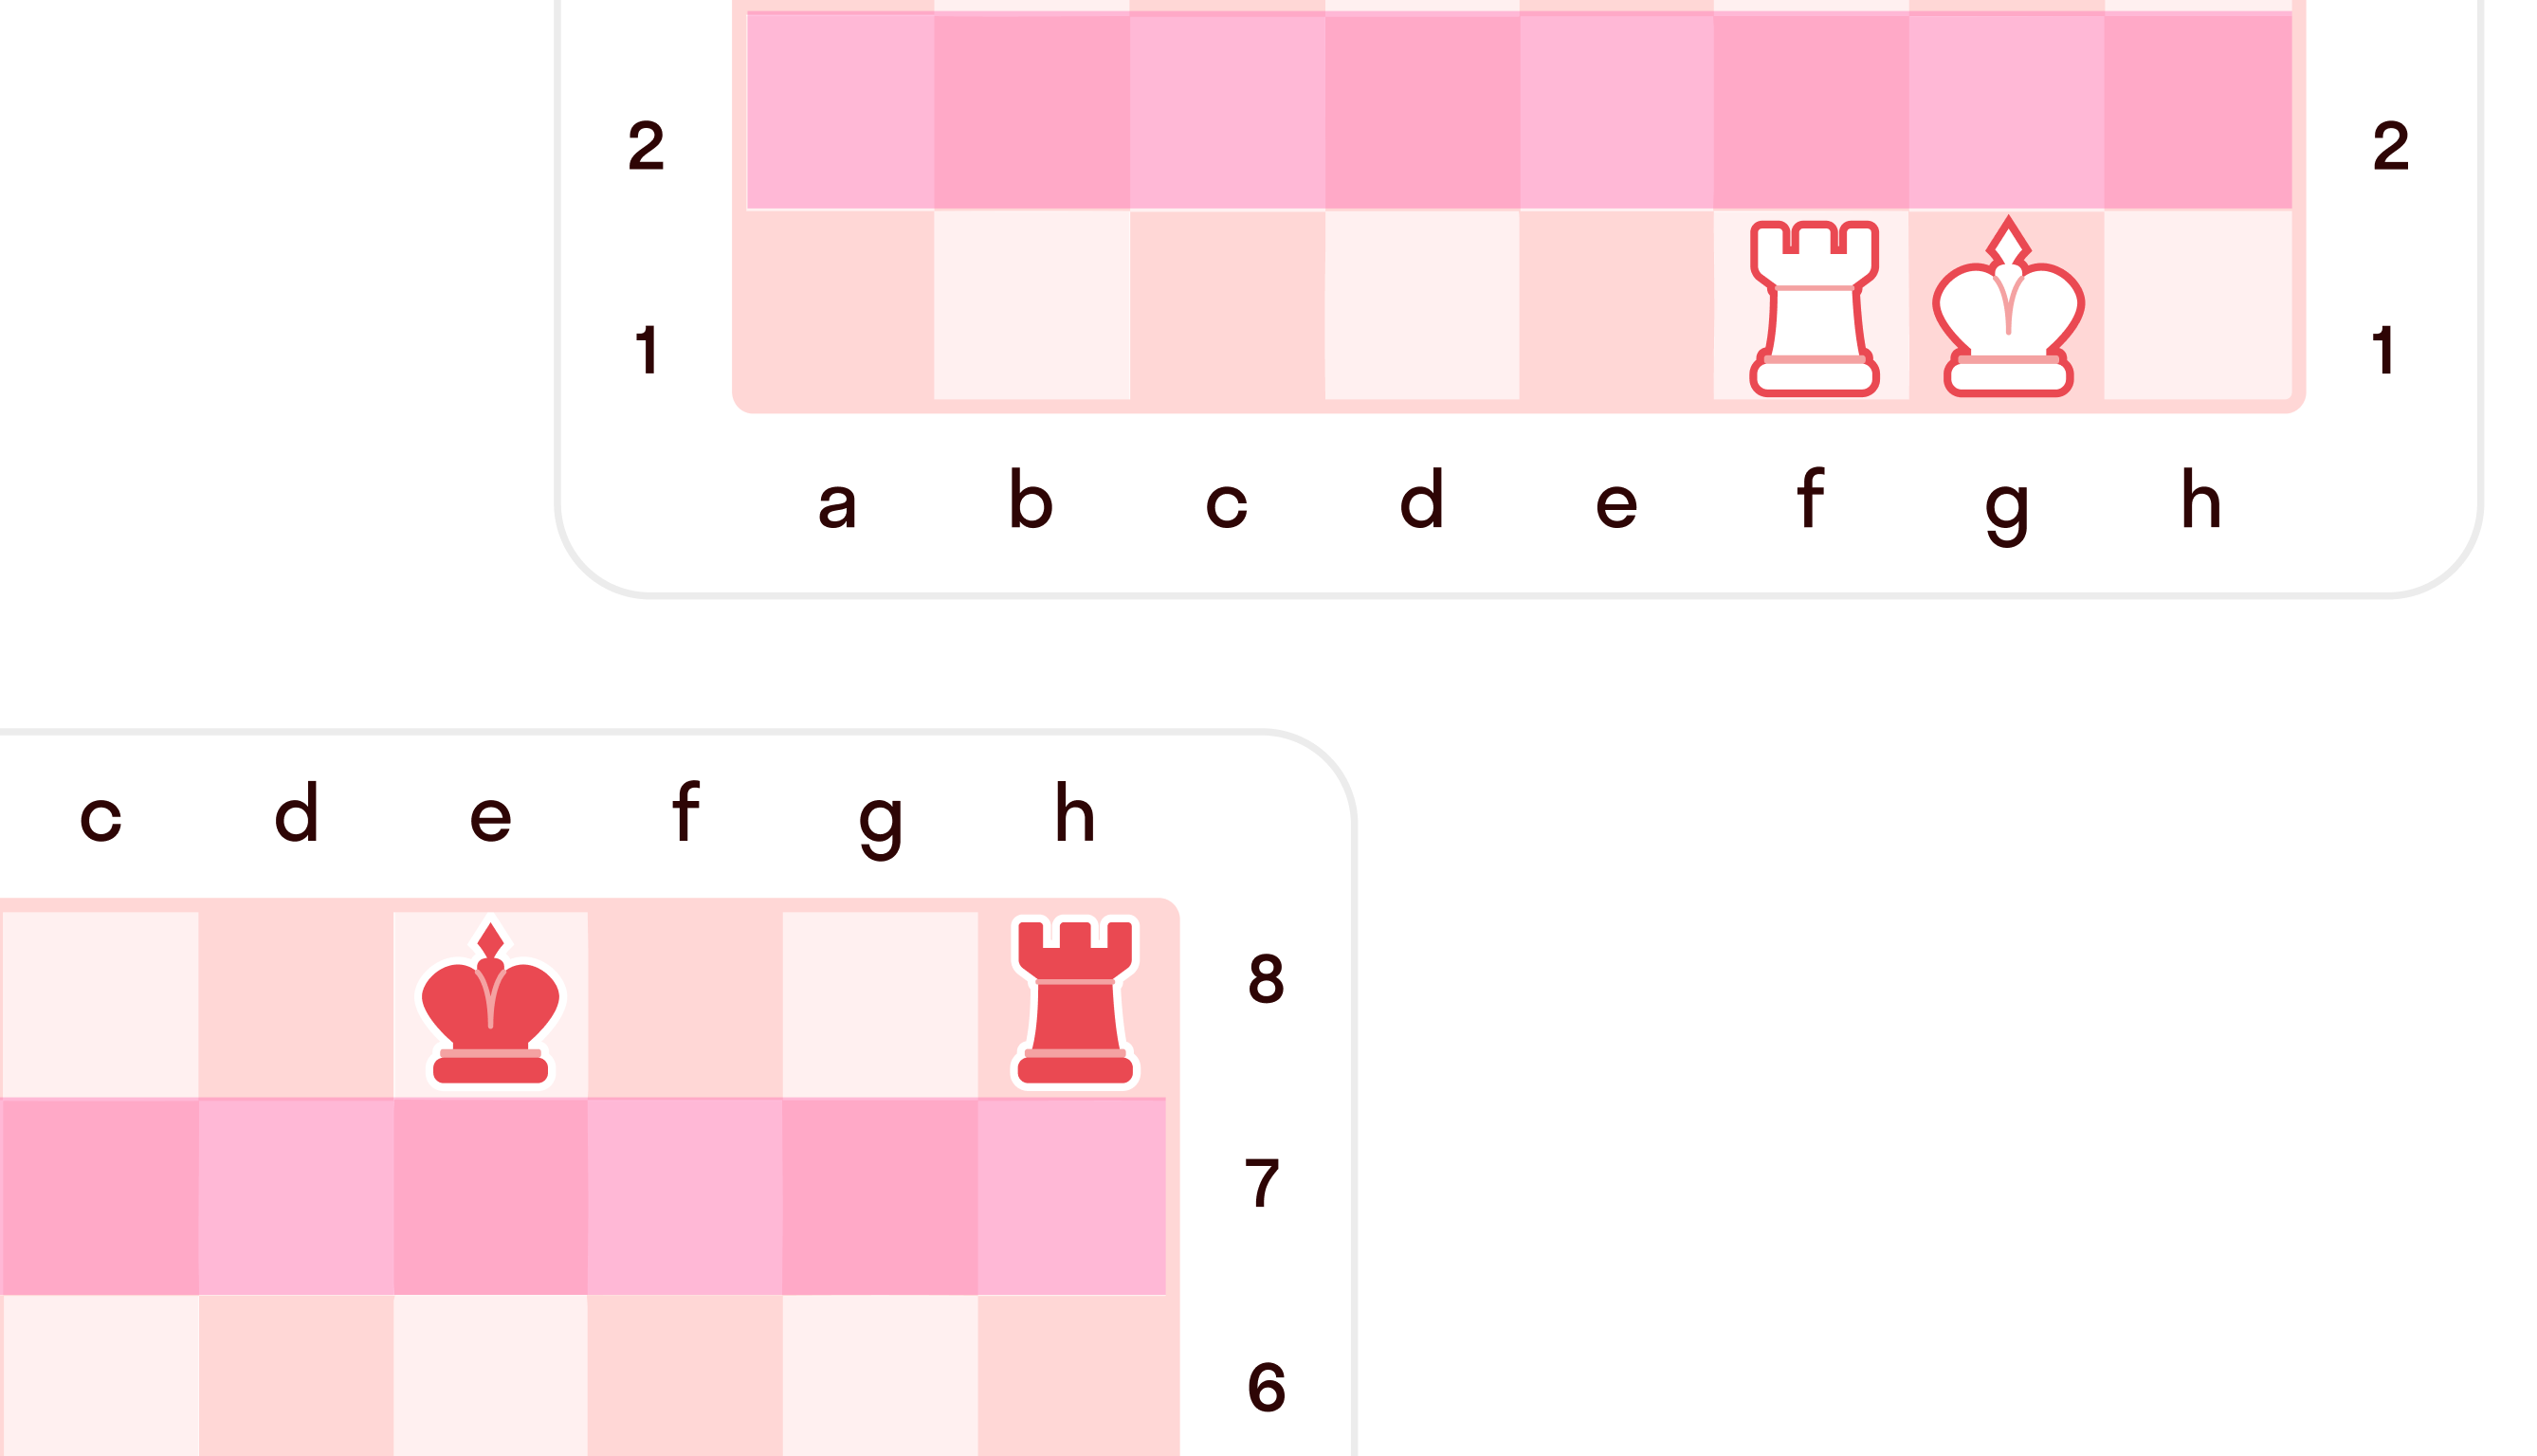 Как делать рокировку в шахматах